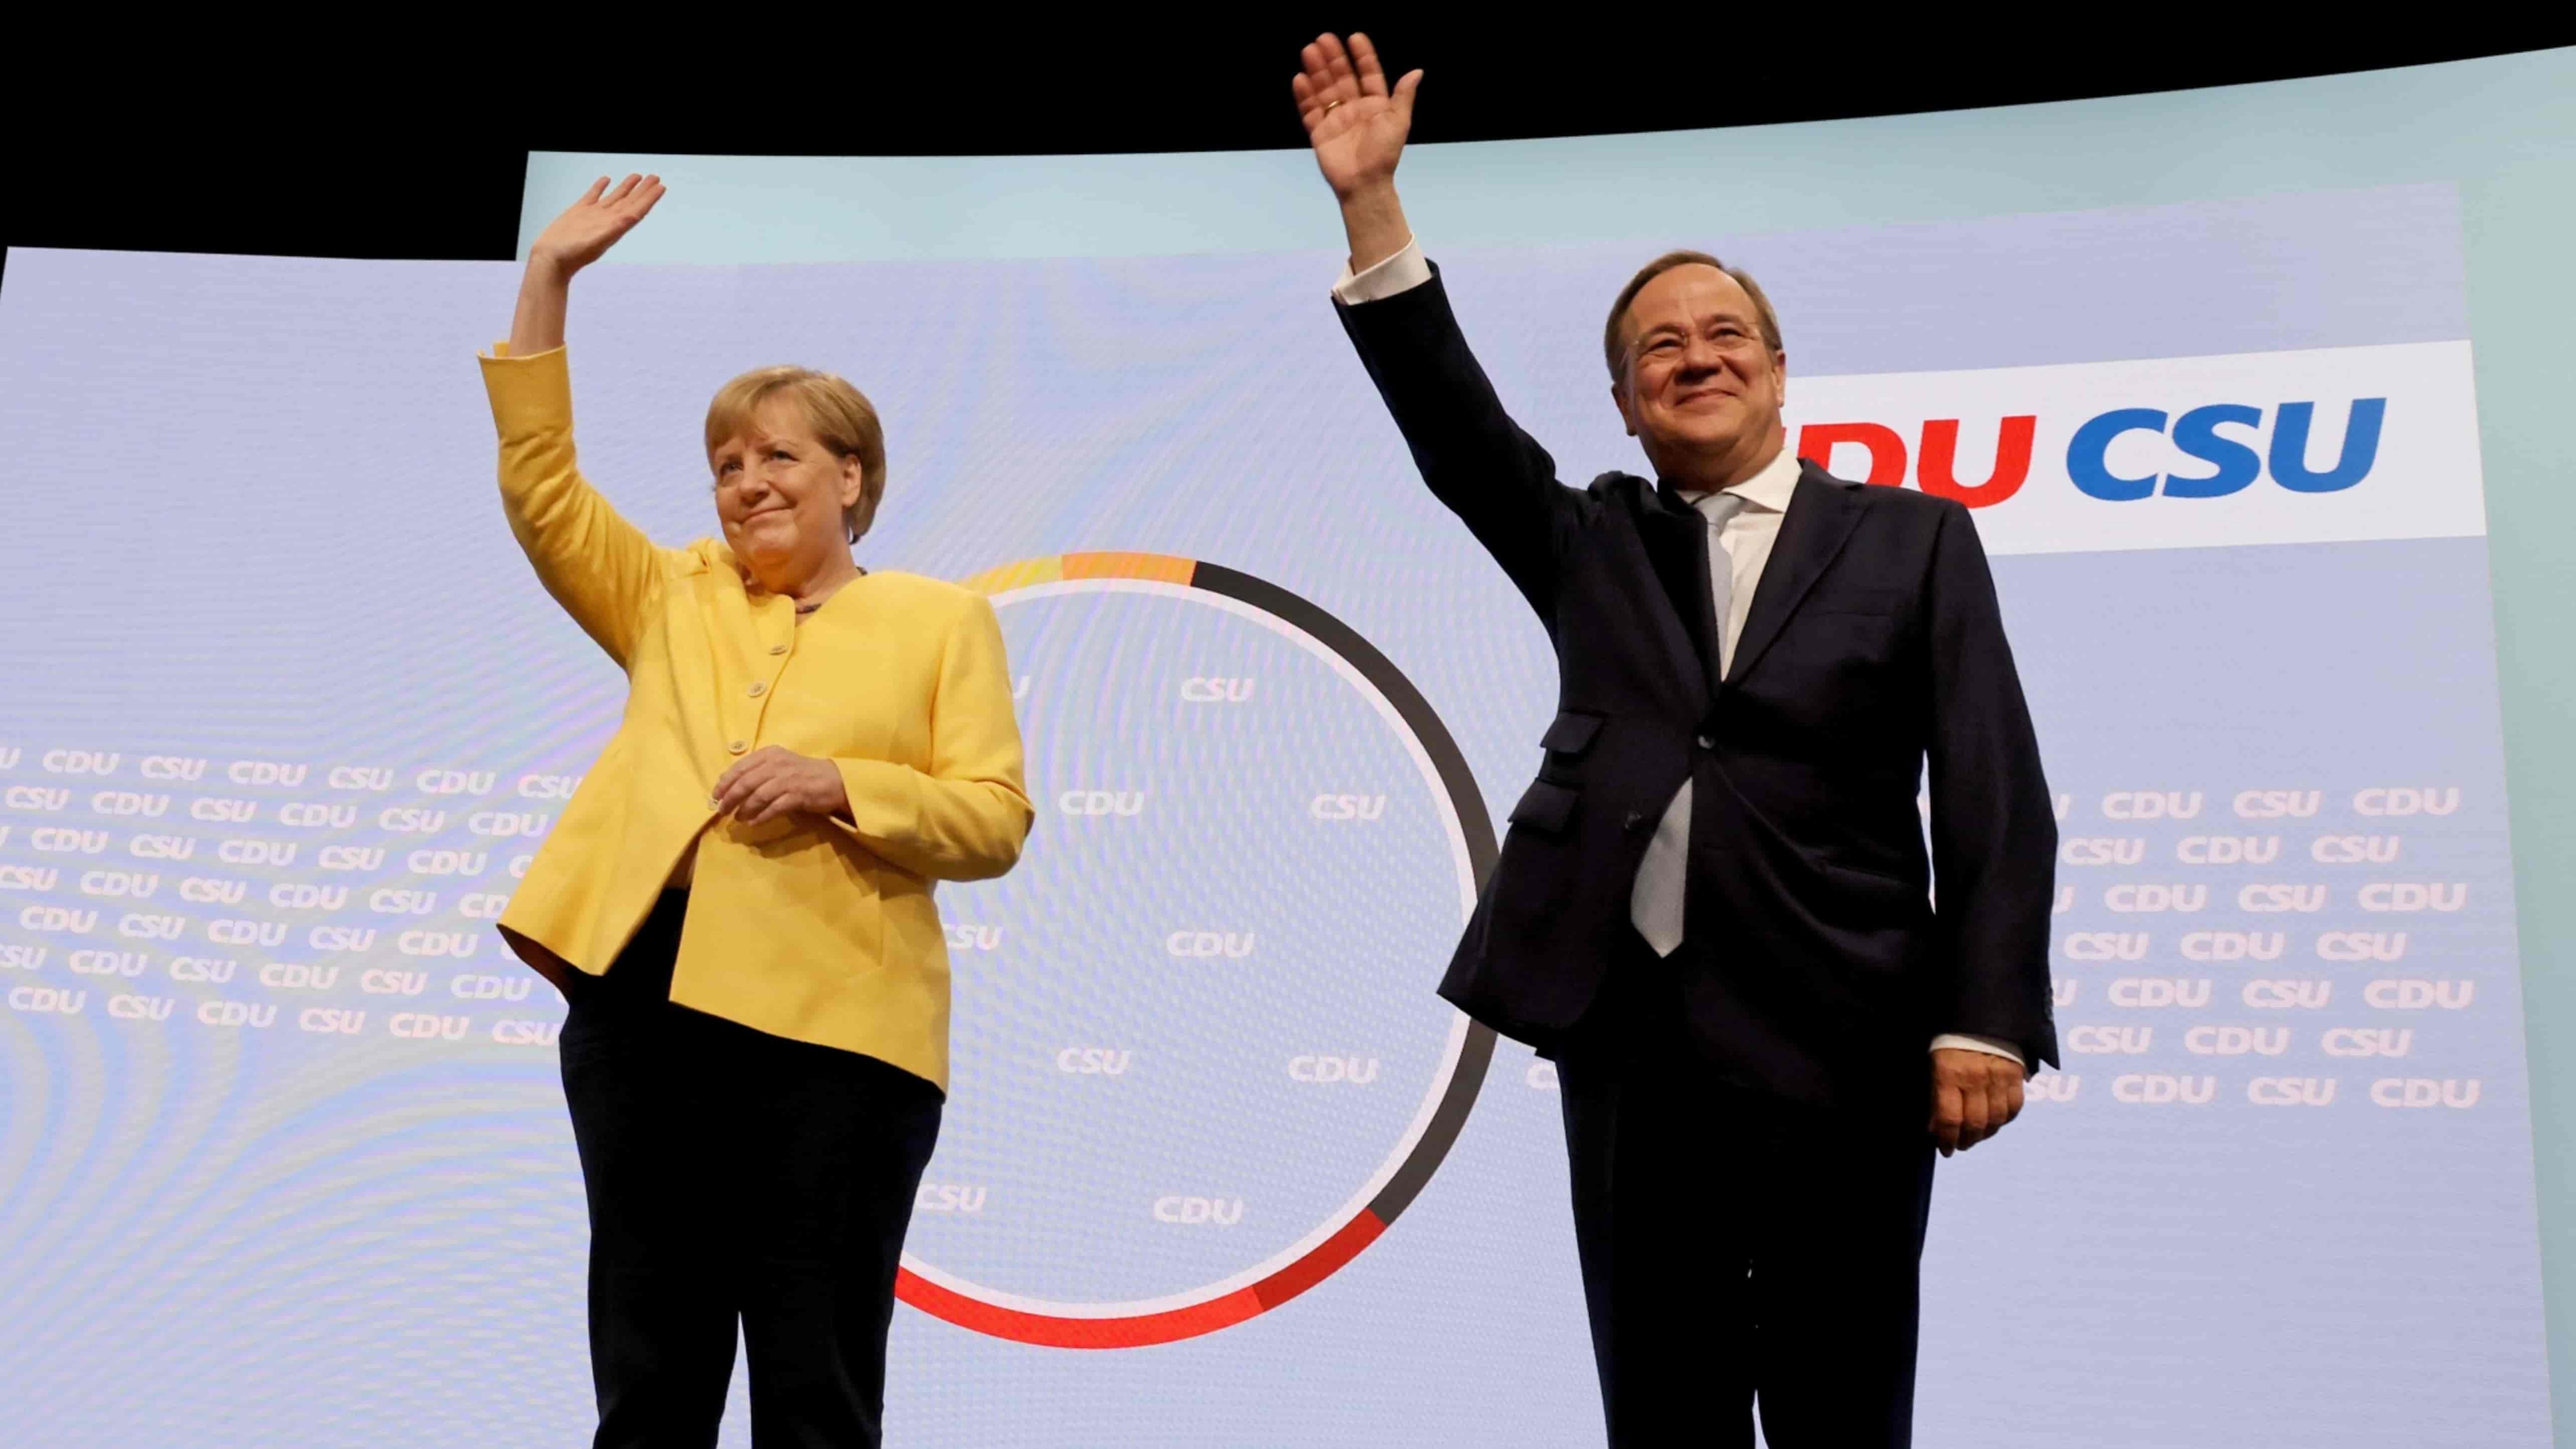 2017年ドイツ連邦議会選挙